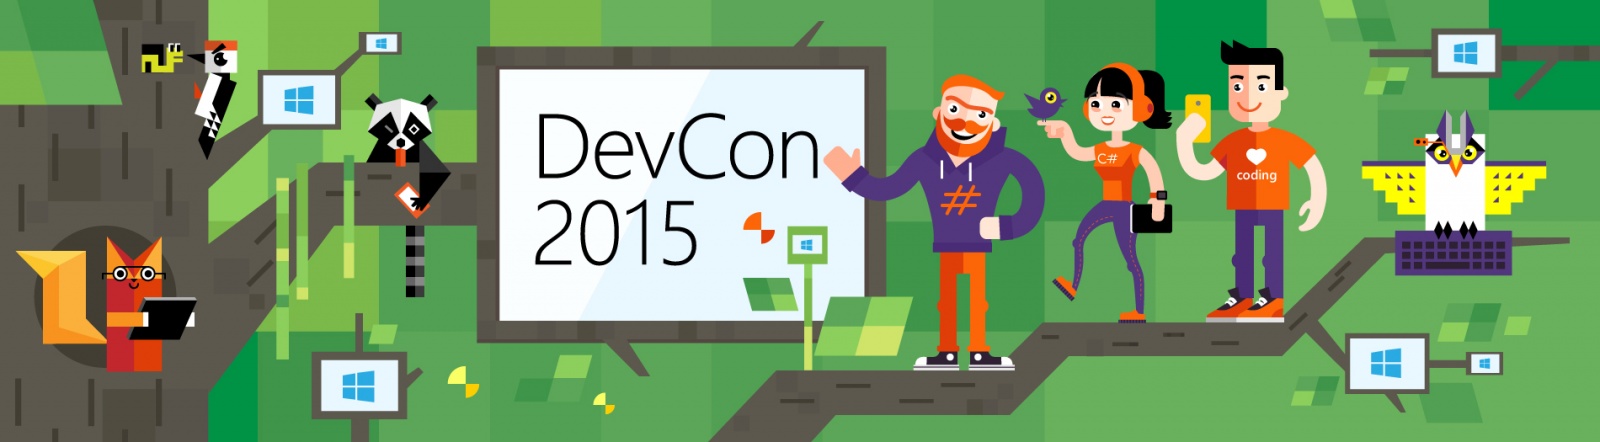 DevCon 2015: анонс второй волны спикеров и докладов конференции - 1